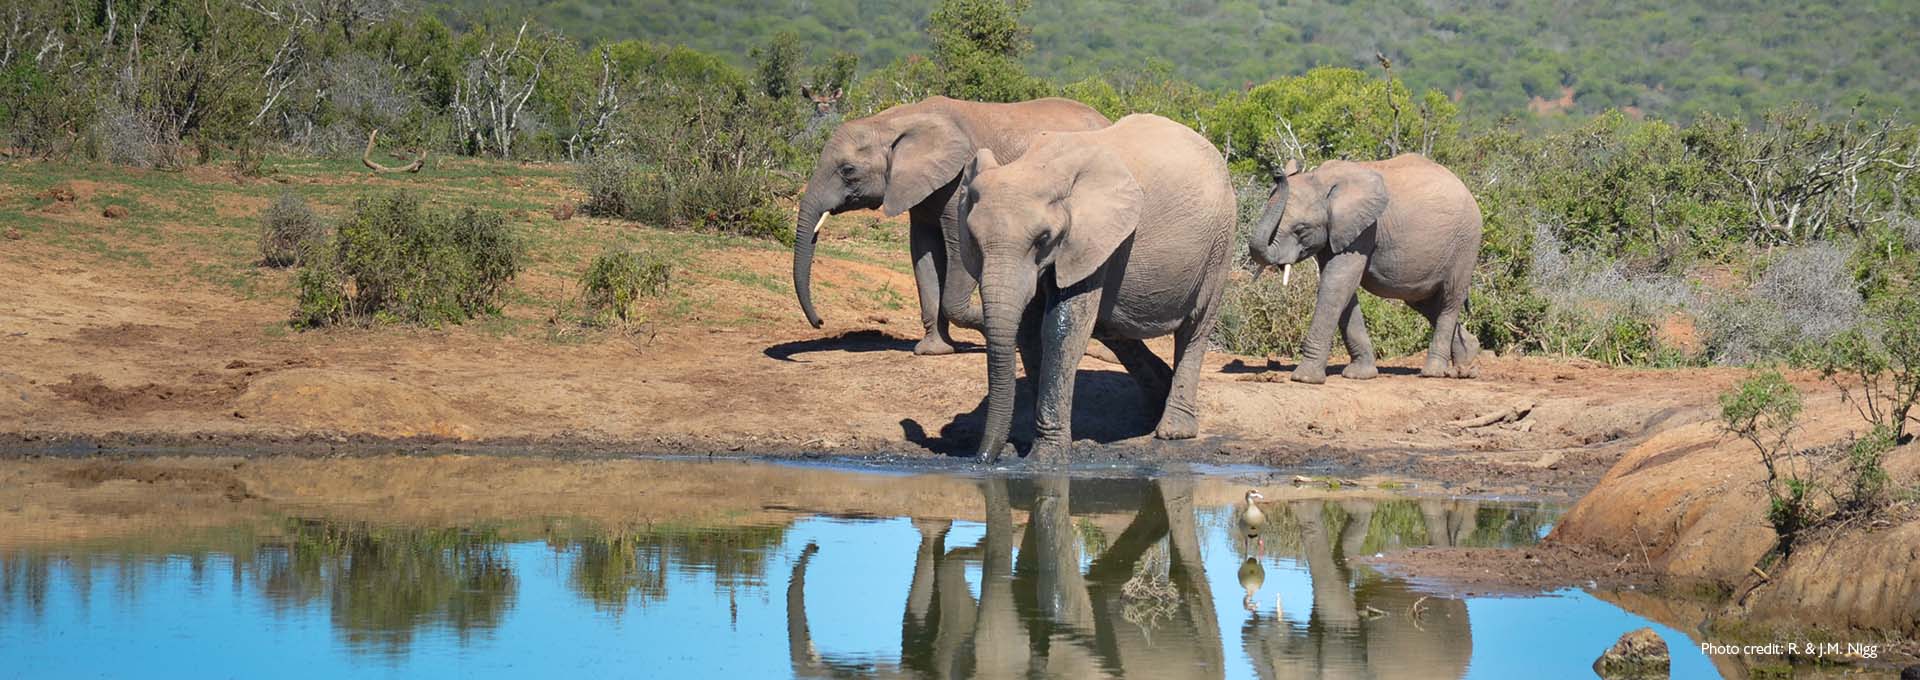 Une famille d'éléphants au bord d'un petit lac avec des buissons verts en arrière-plan, photographiée par des utilisateurs d'aides auditives Bernafon Alpha